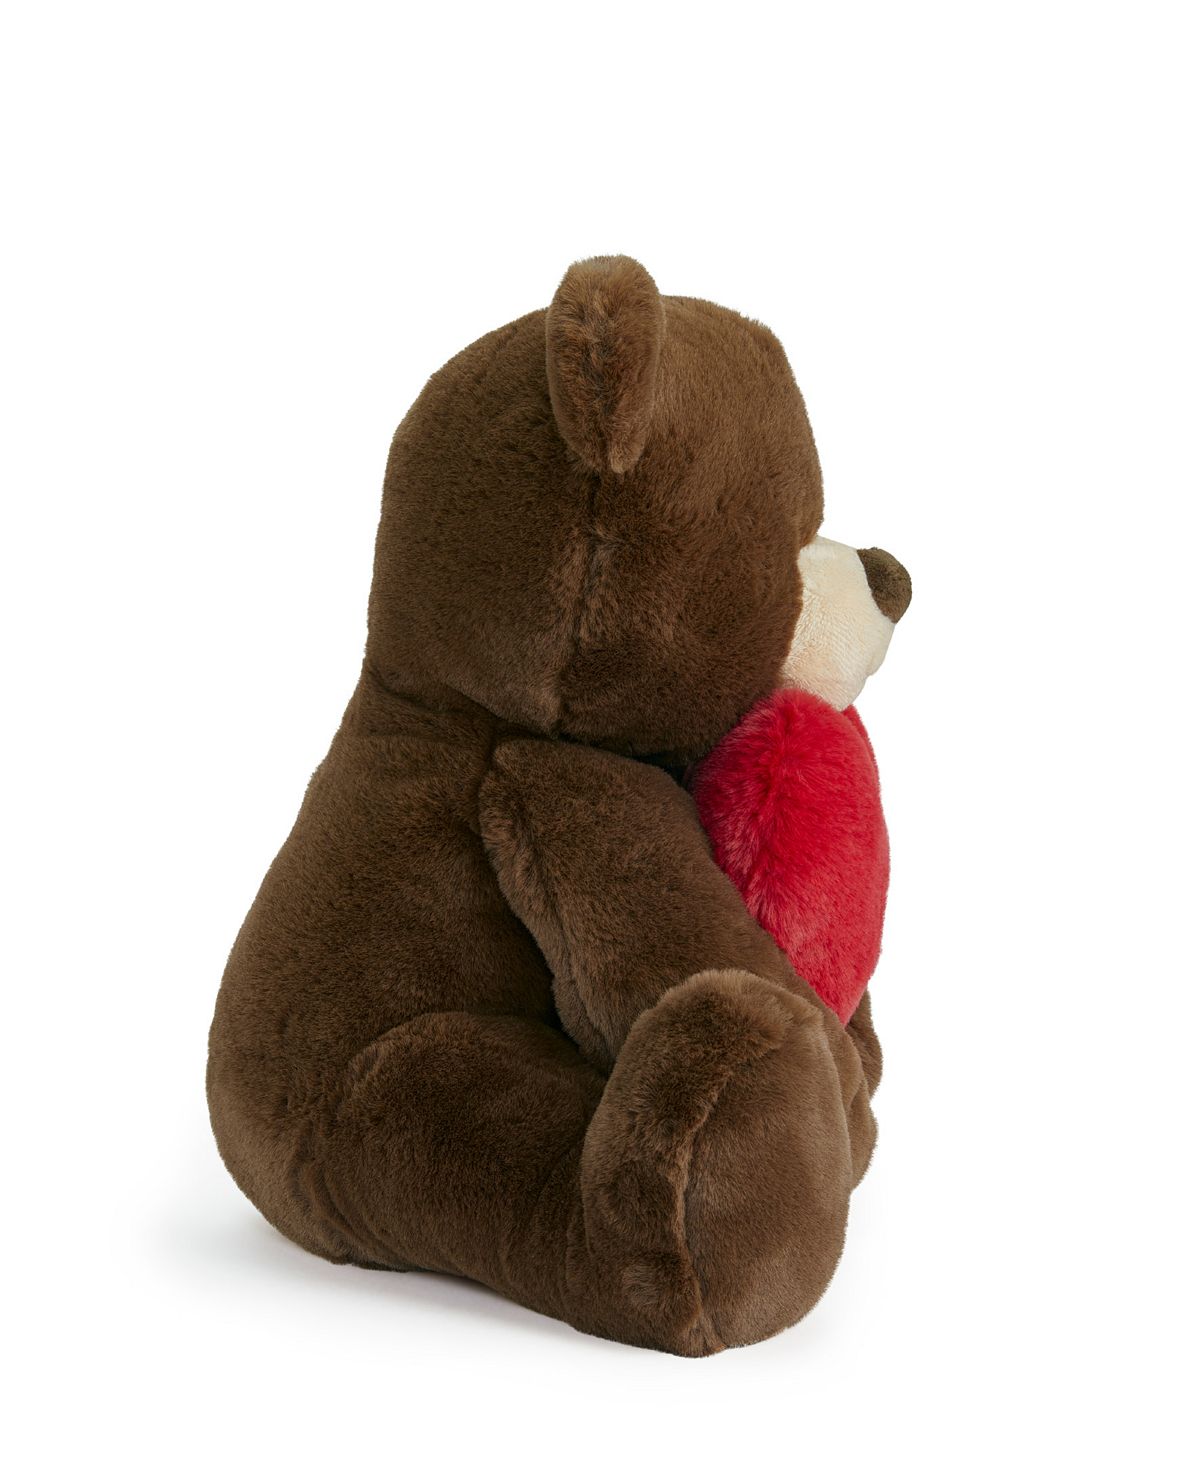 Geoffrey's Toy Box 12-inch Plush Heart Bear - Cuddly Stuffed Animal